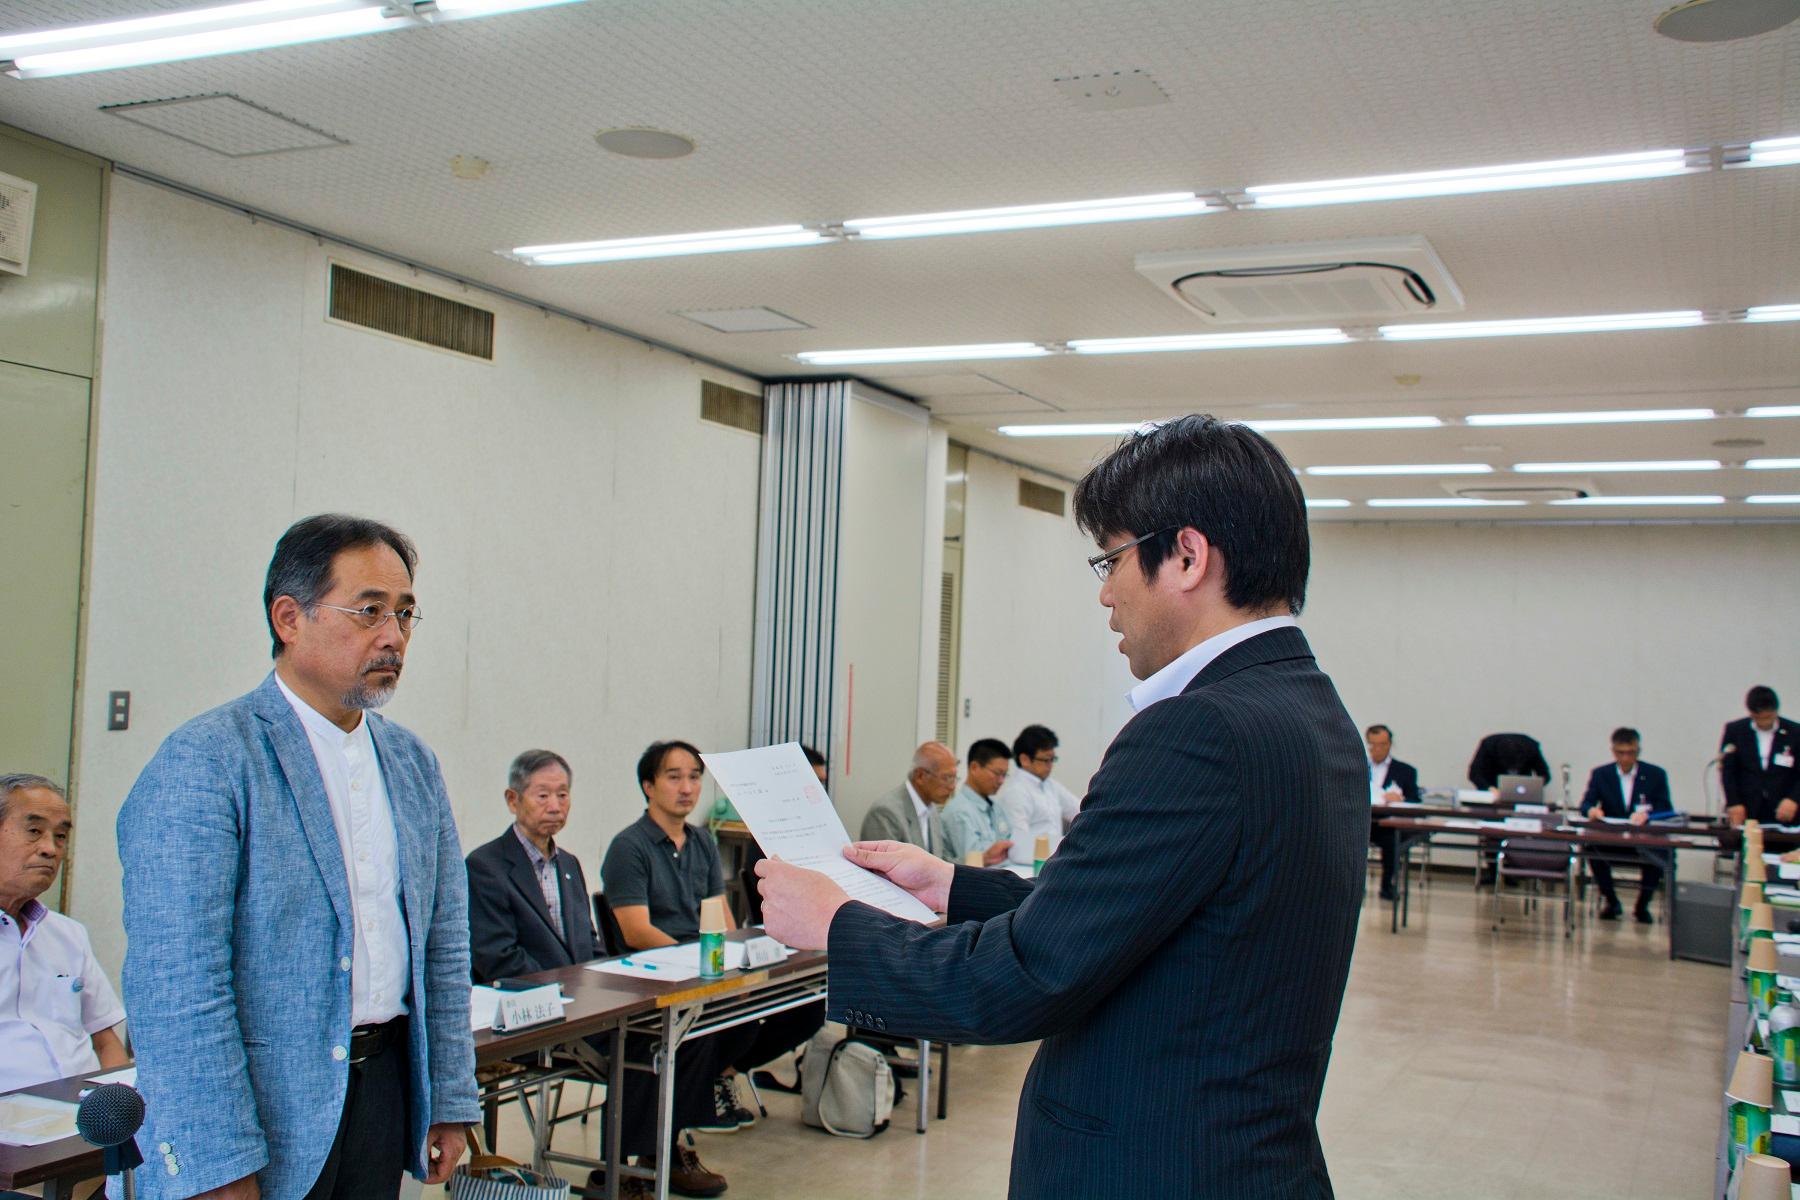 会議室内で多くの人が見守る中、右側の黒いスーツの男性が左側の青いジャケットの男性に書類をわたす写真